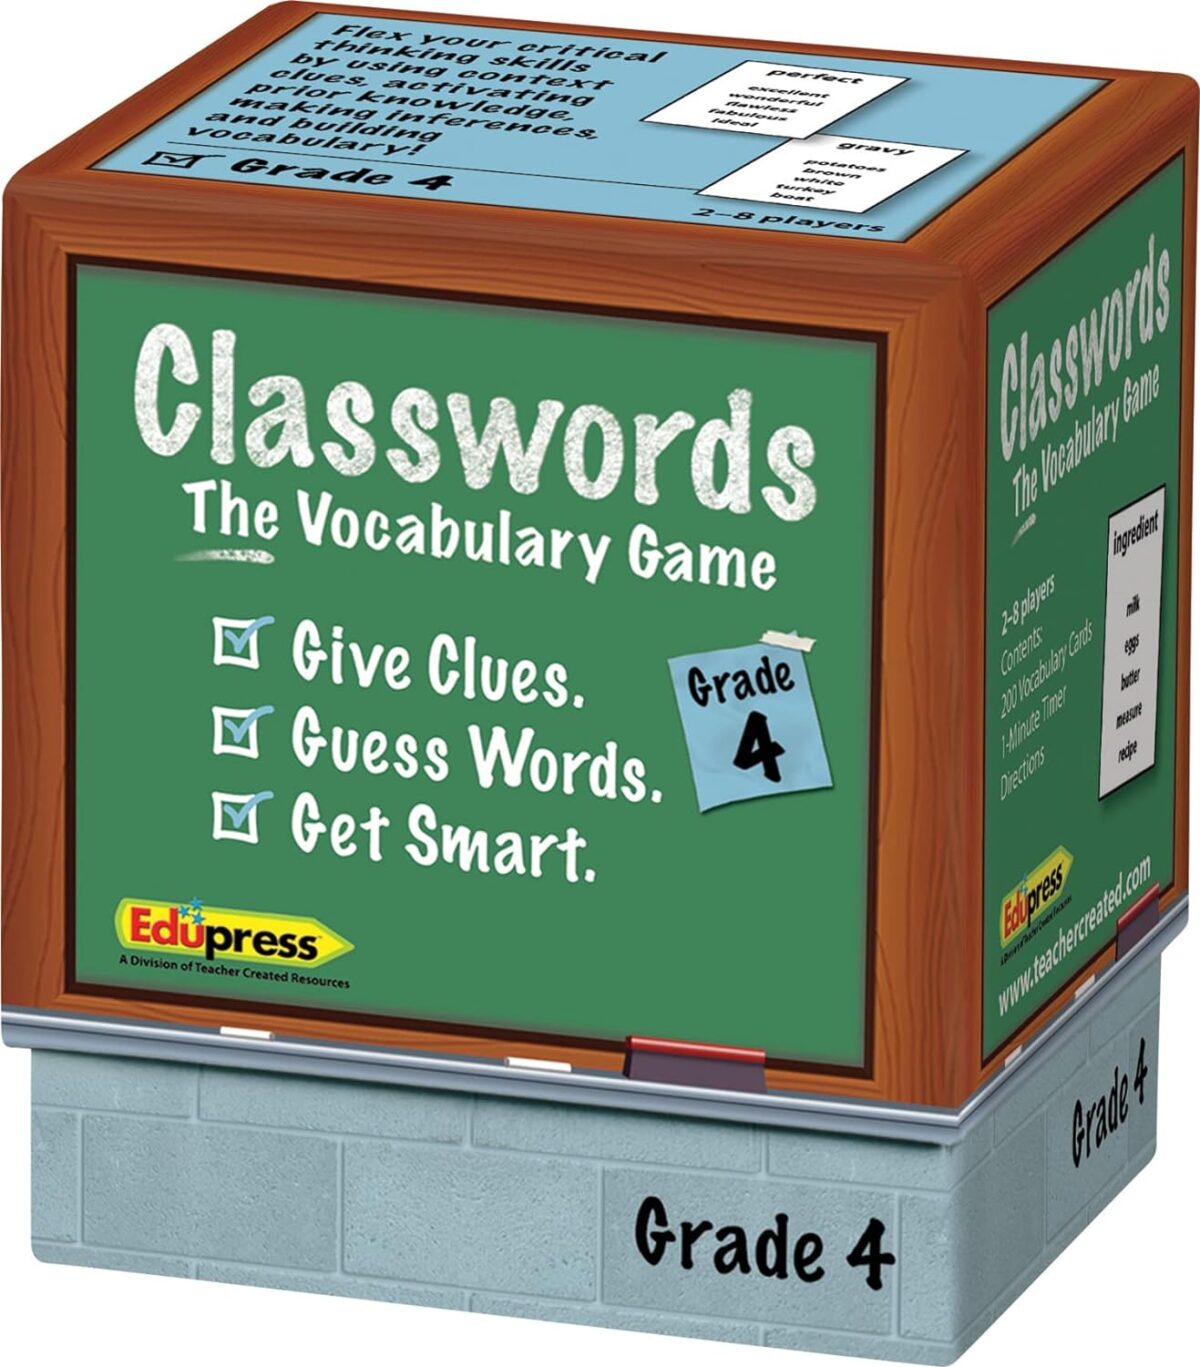 Classwords Vocabulary Game